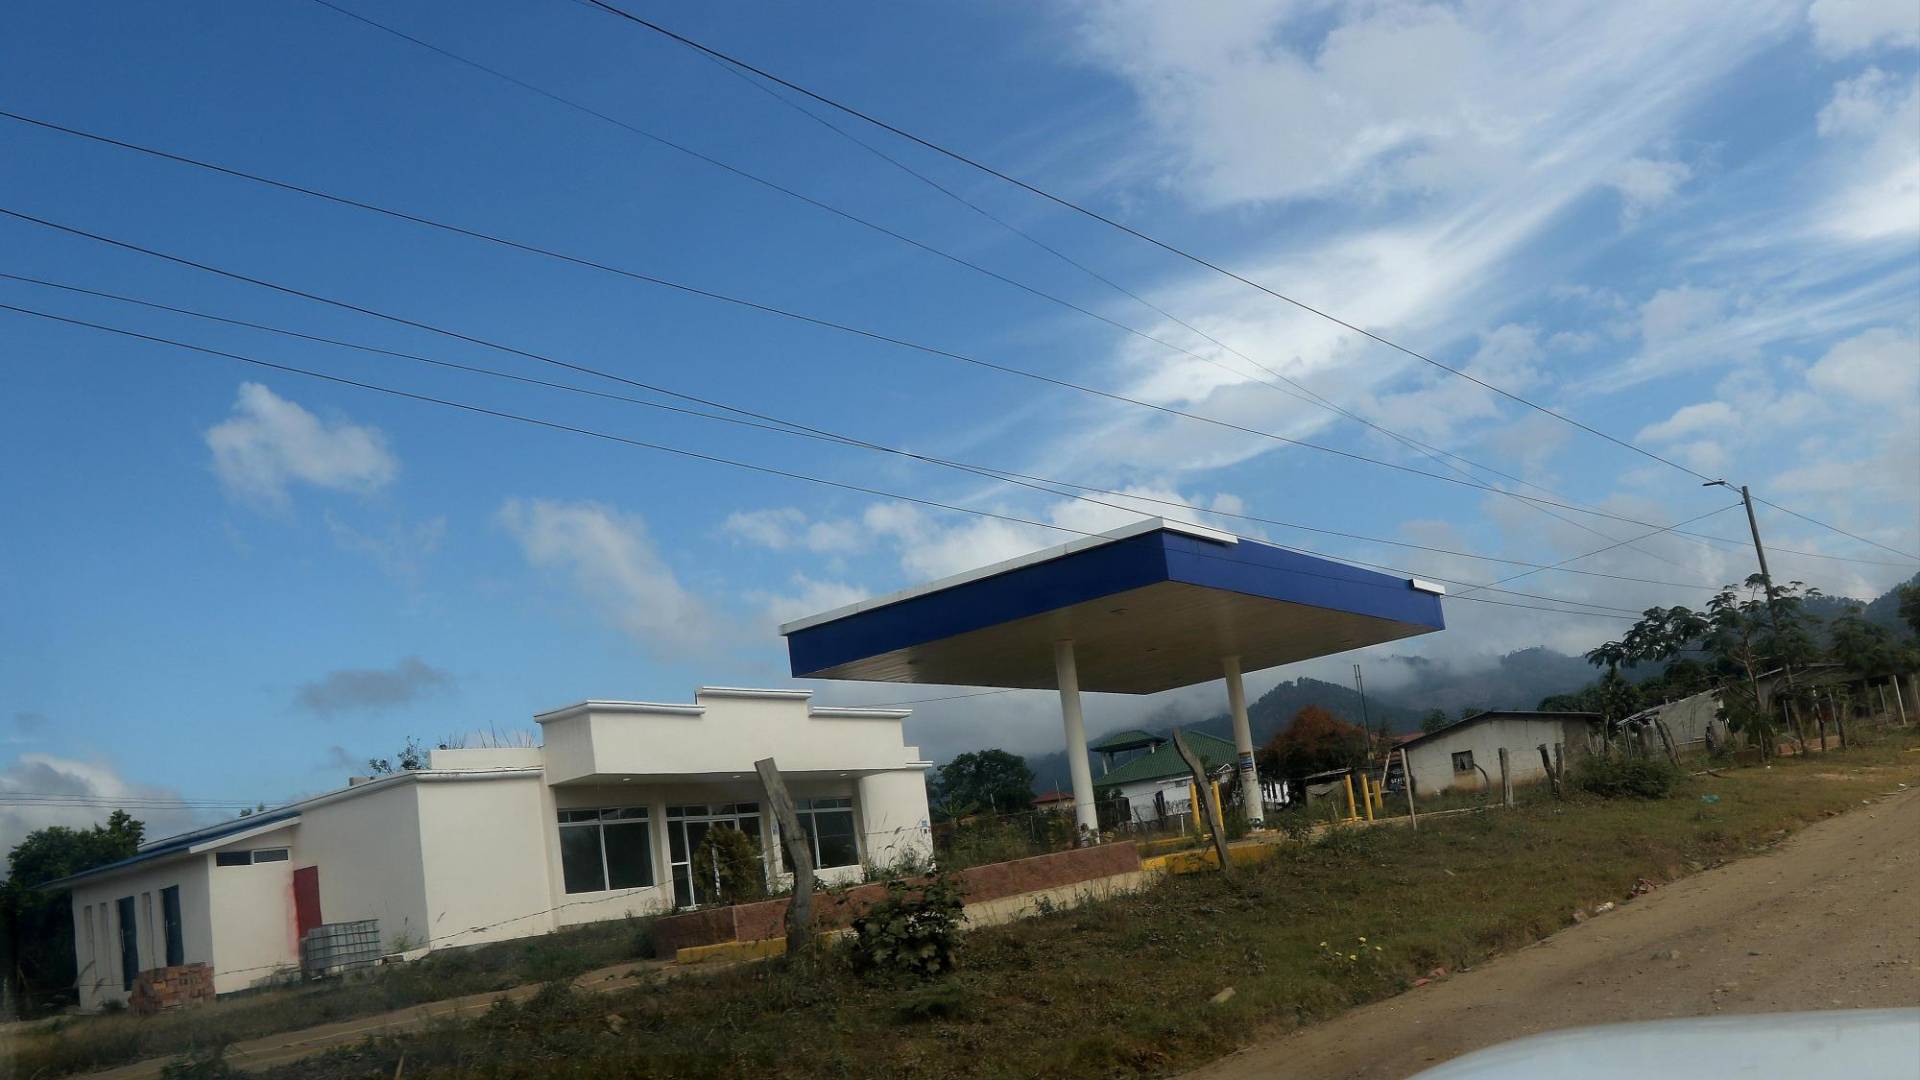 $!En un pueblo que no supera los 1,400 habitantes se construyen actualmente dos gasolineras.